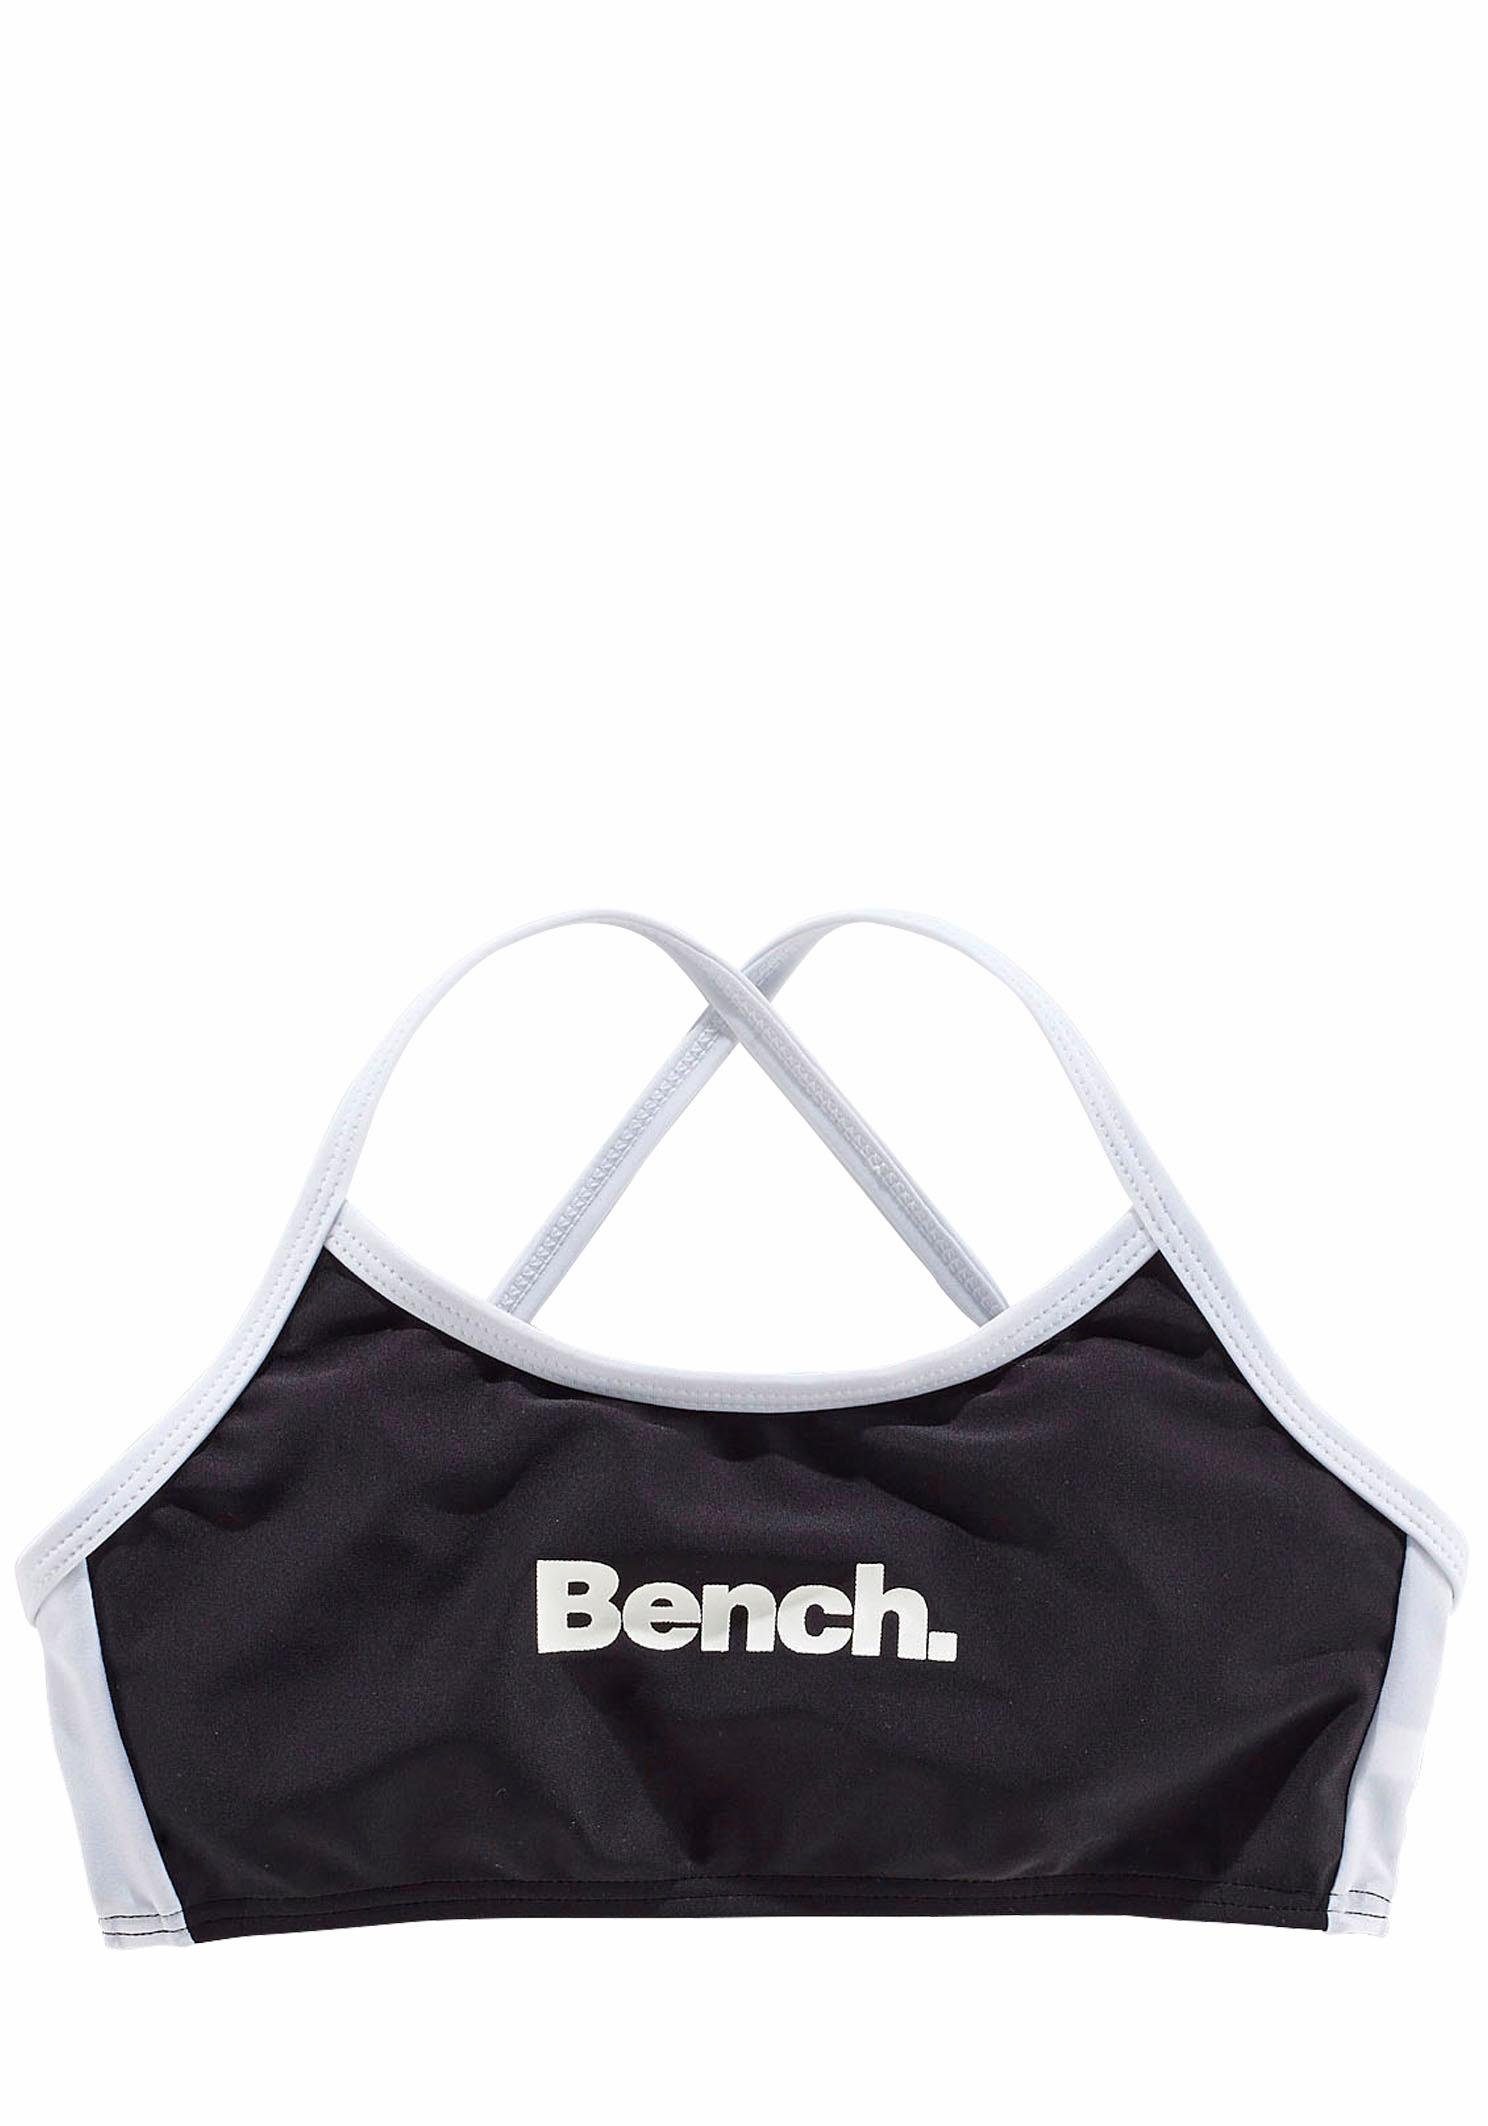 Bench. schwarz-weiß Trägern mit Bustier-Bikini gekreuzten